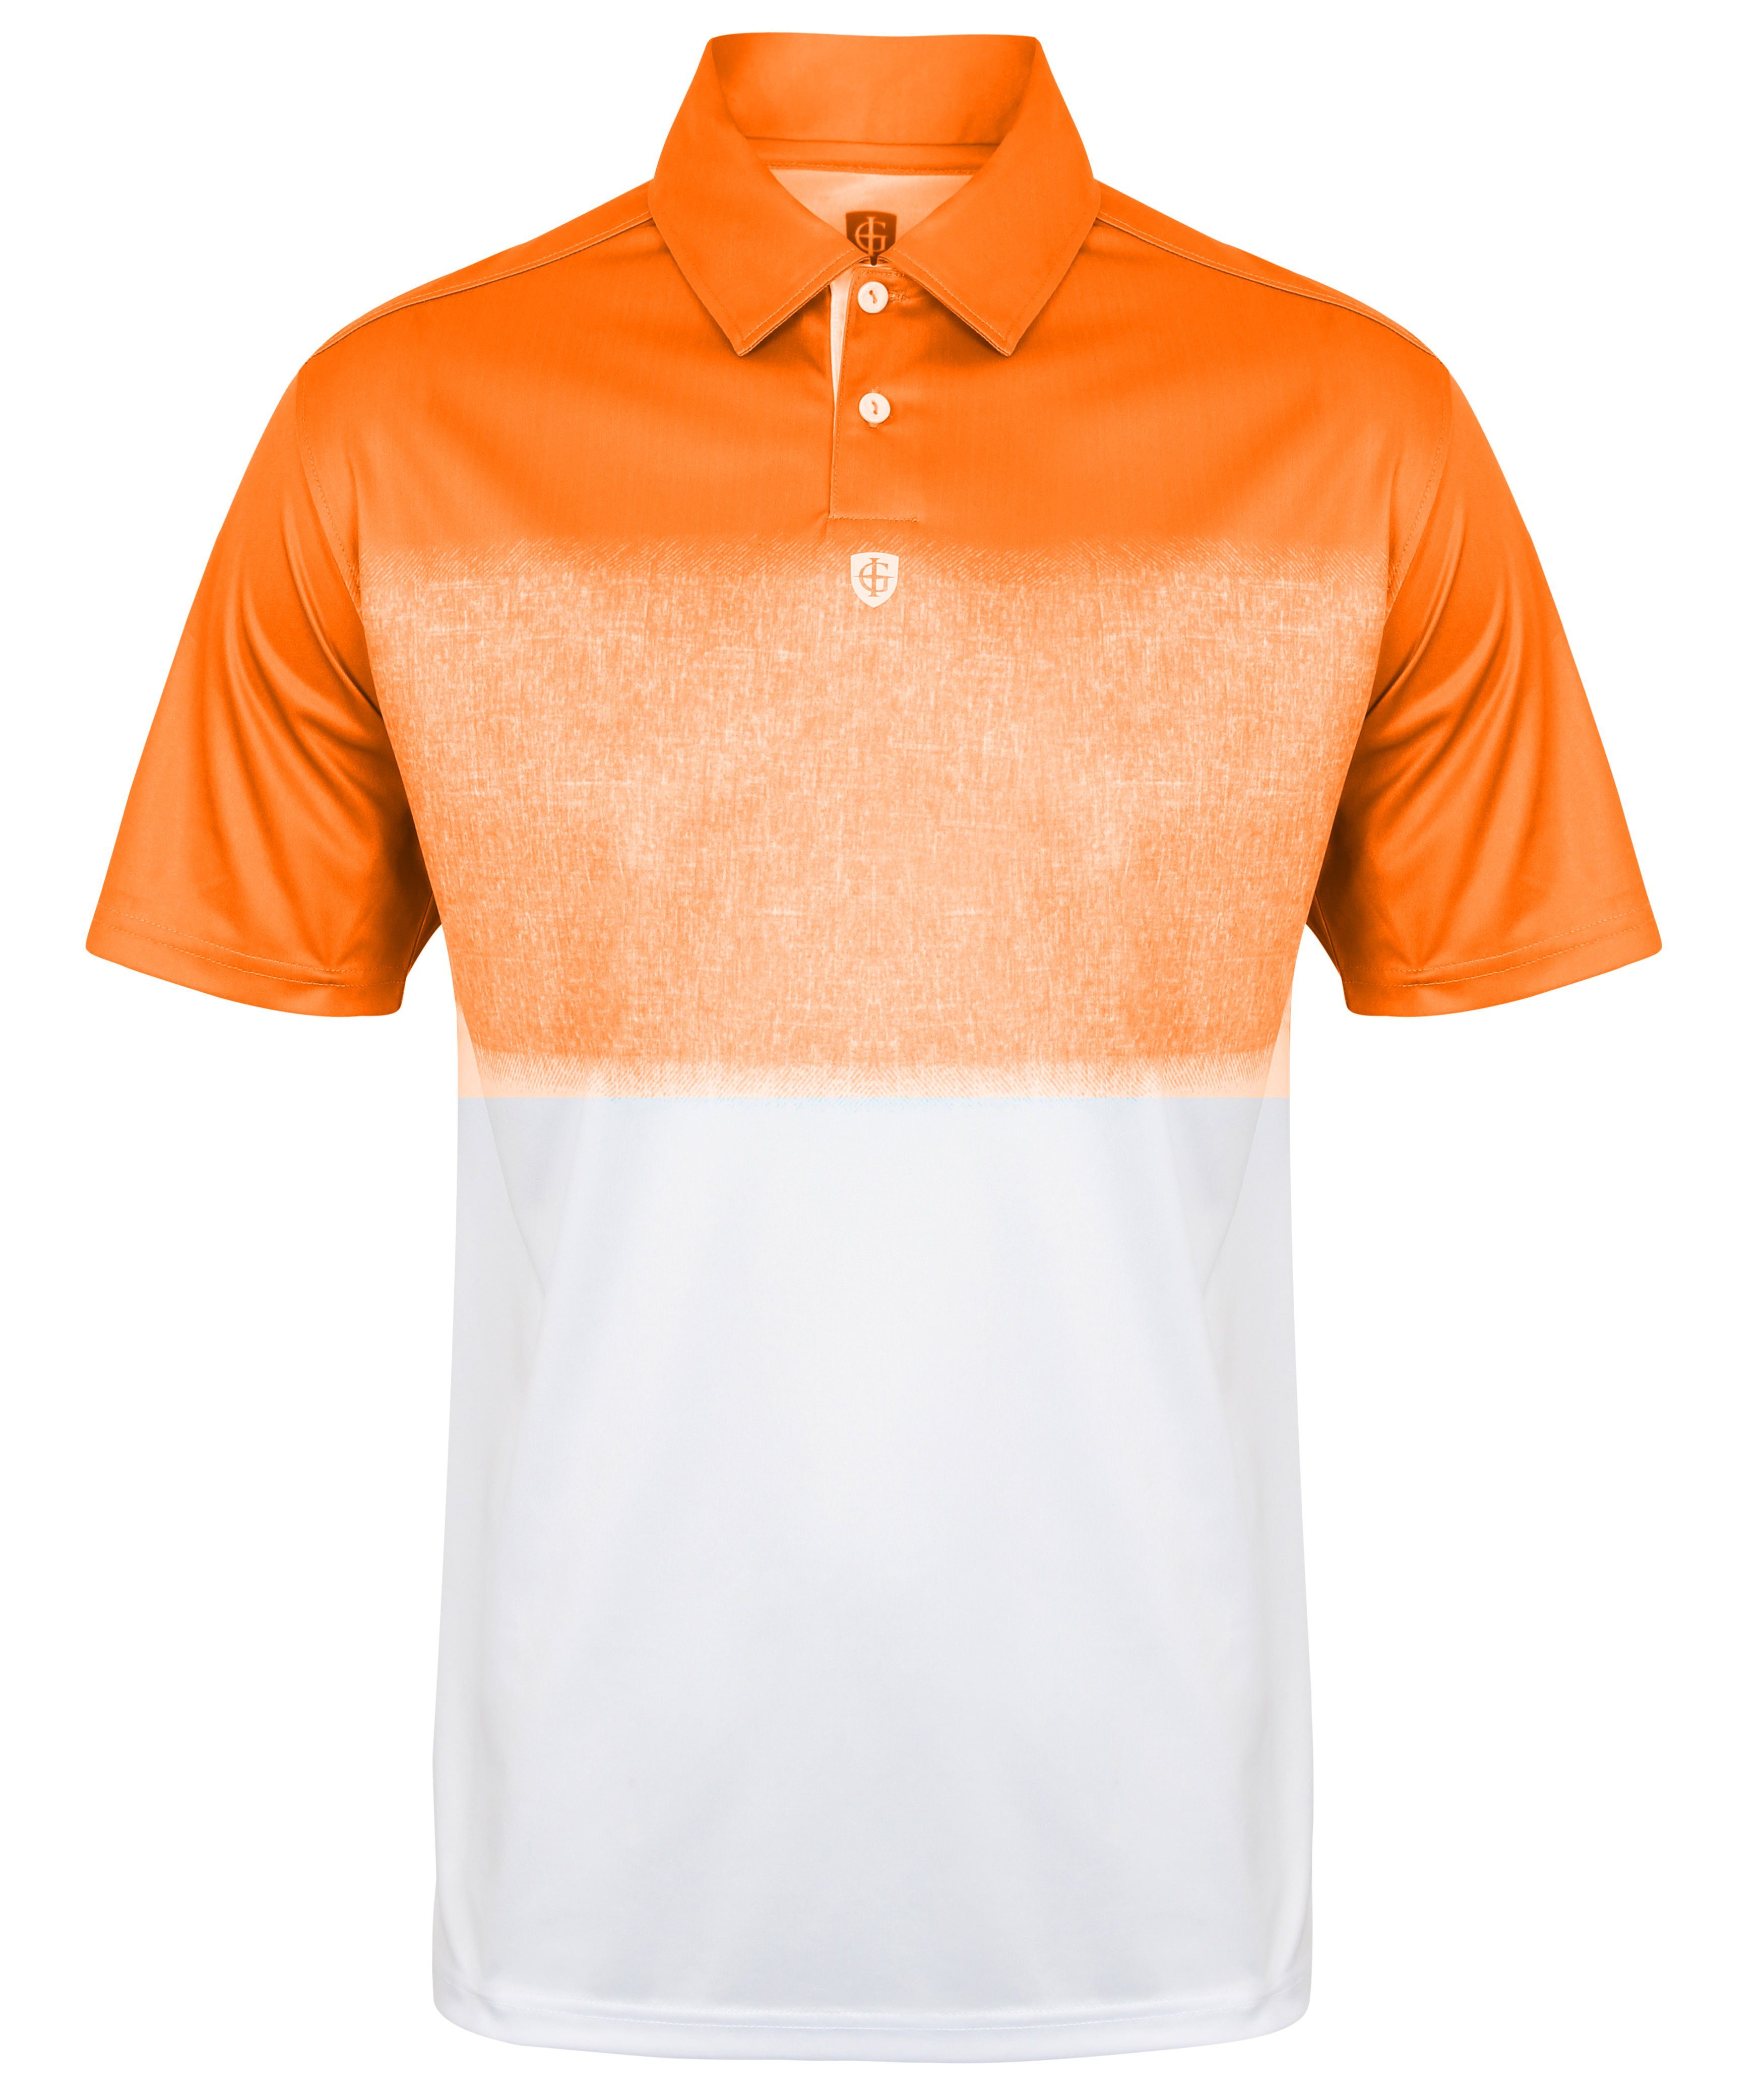 Poloshirt 1650 GREEN - ISLAND Herren atmungsaktives Poloshirt Orange Hightech-Material